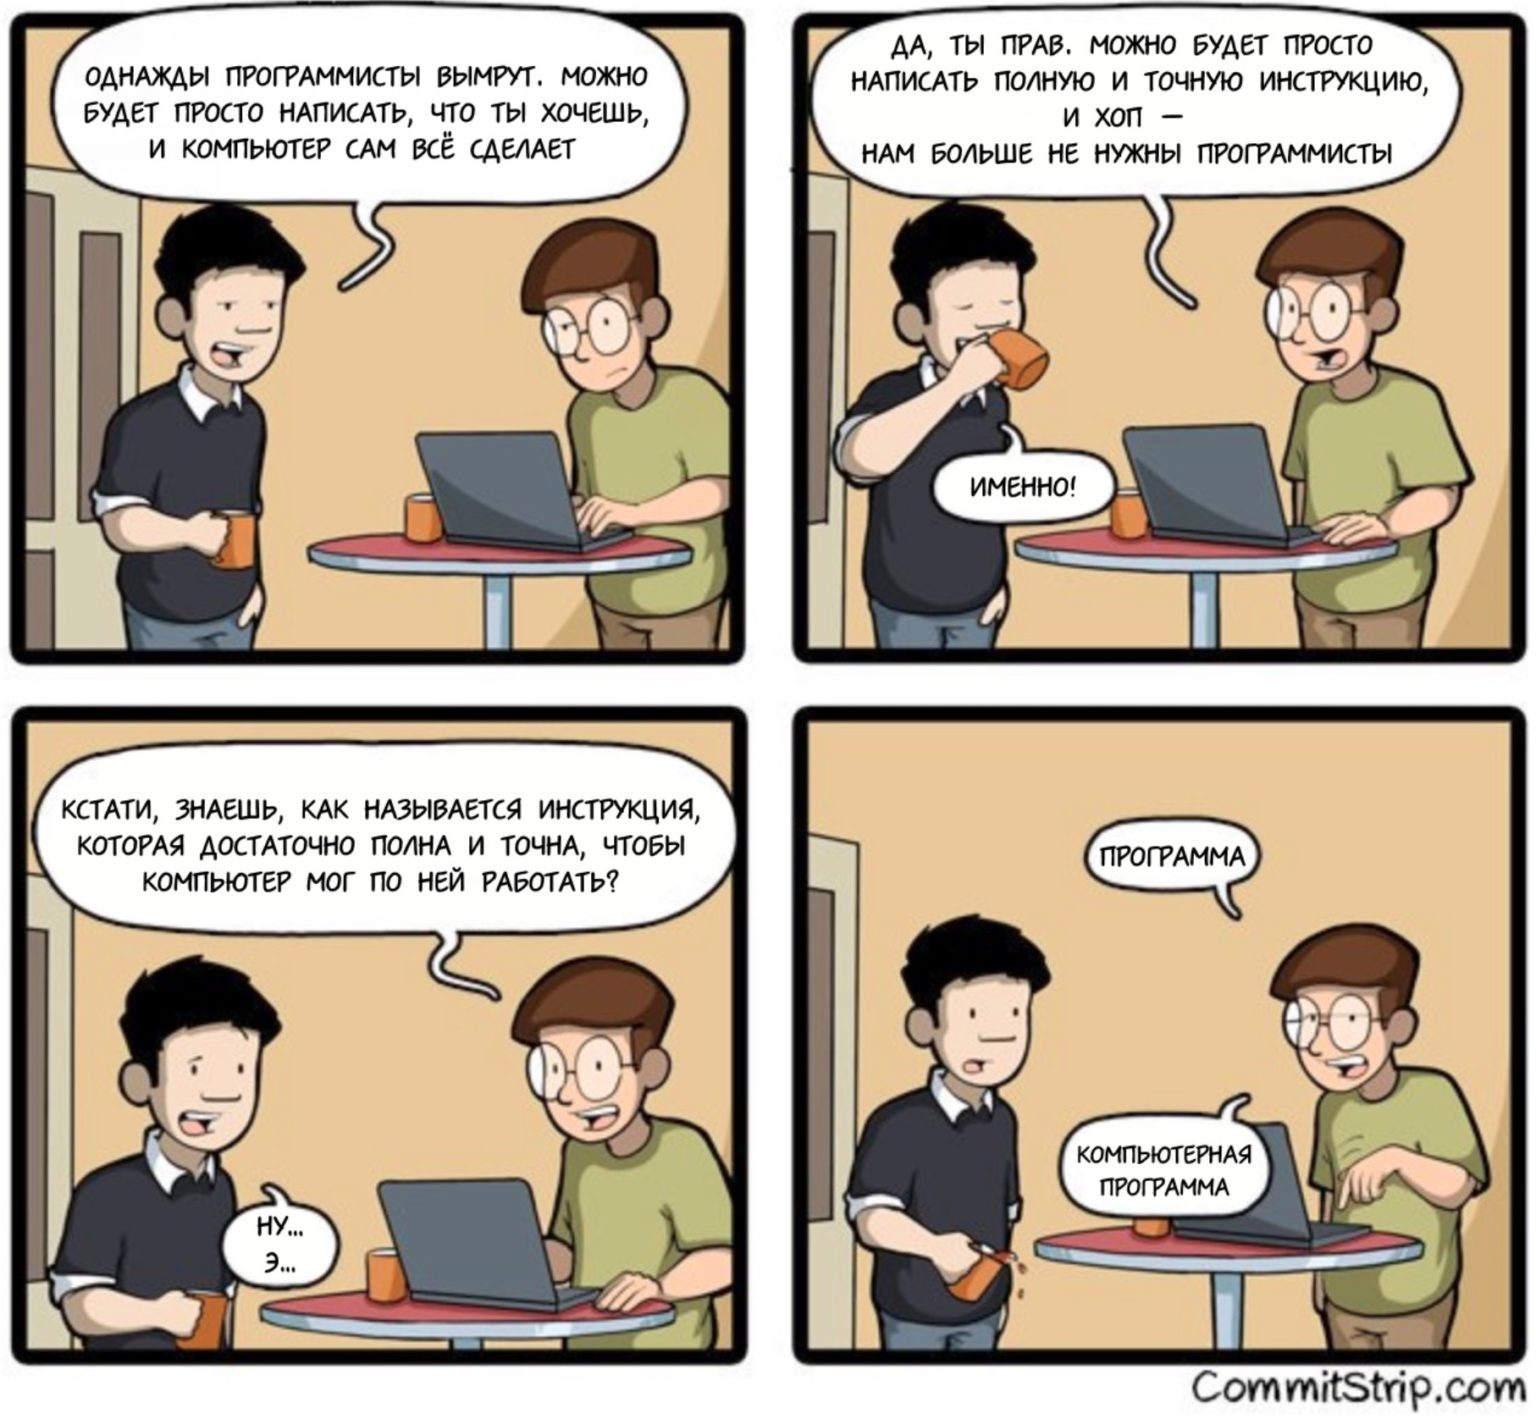 Ай буде. Комиксы про программистов. Шутки про программистов. Веселые комиксы про программистов. Смешной программист.